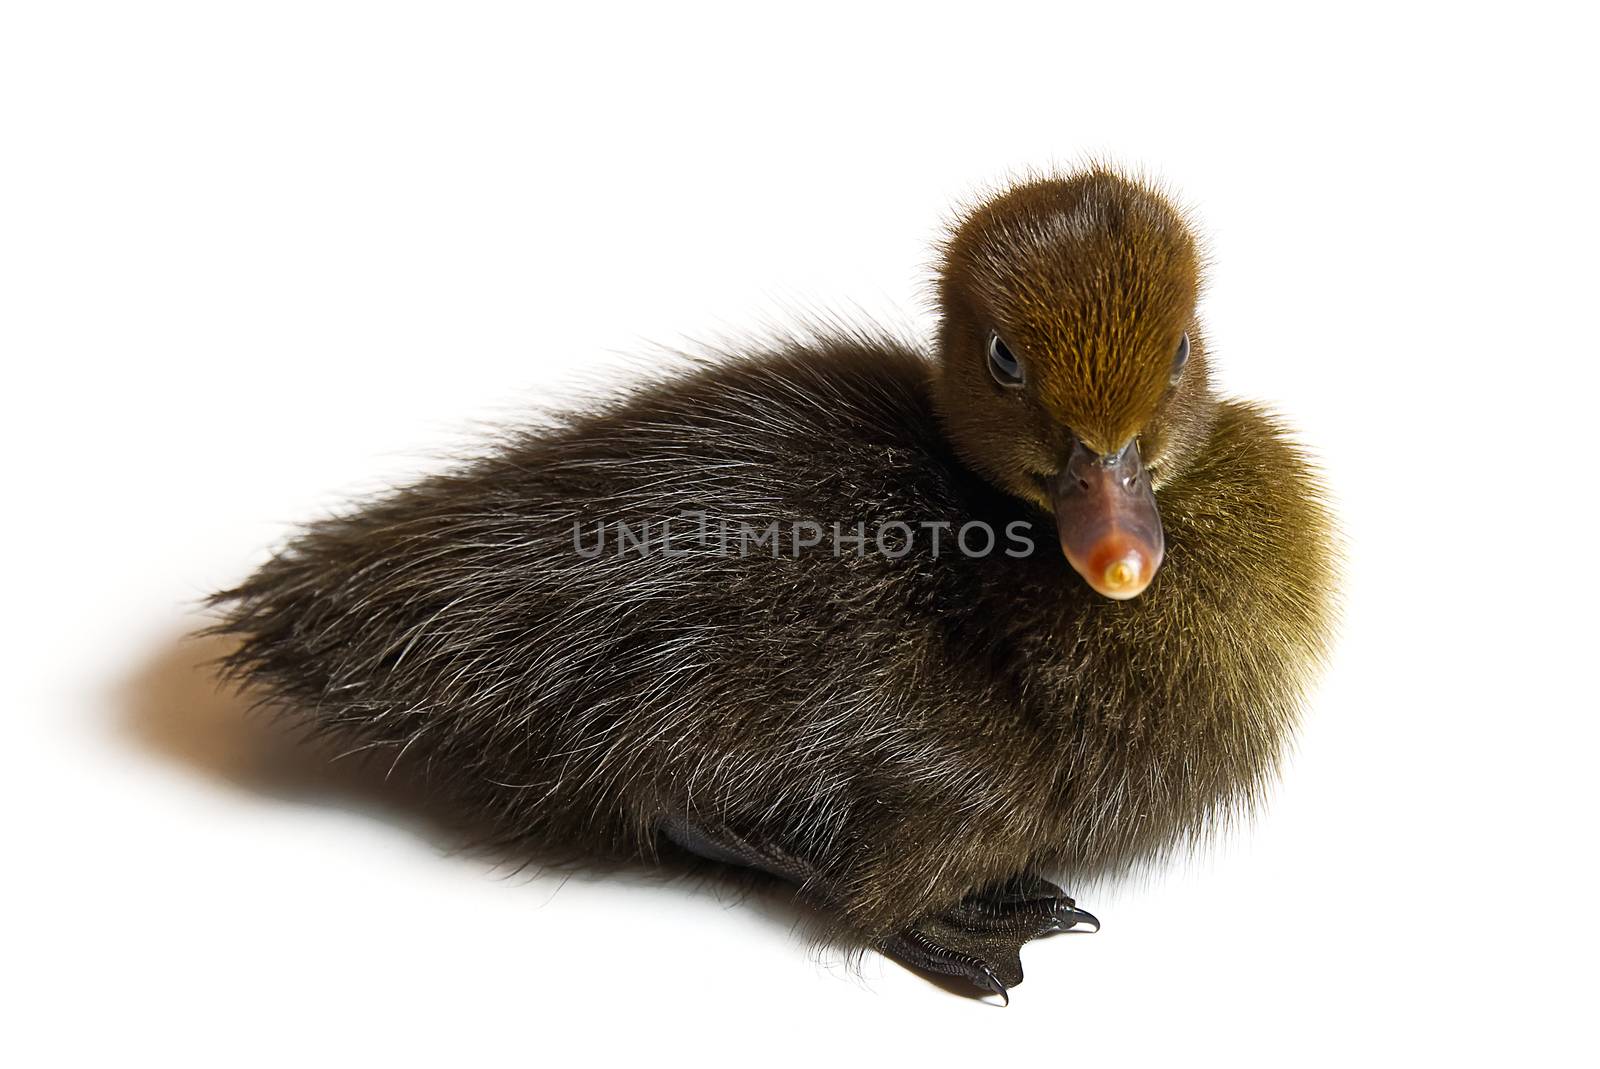 Brown newborn duckling closeup on white background